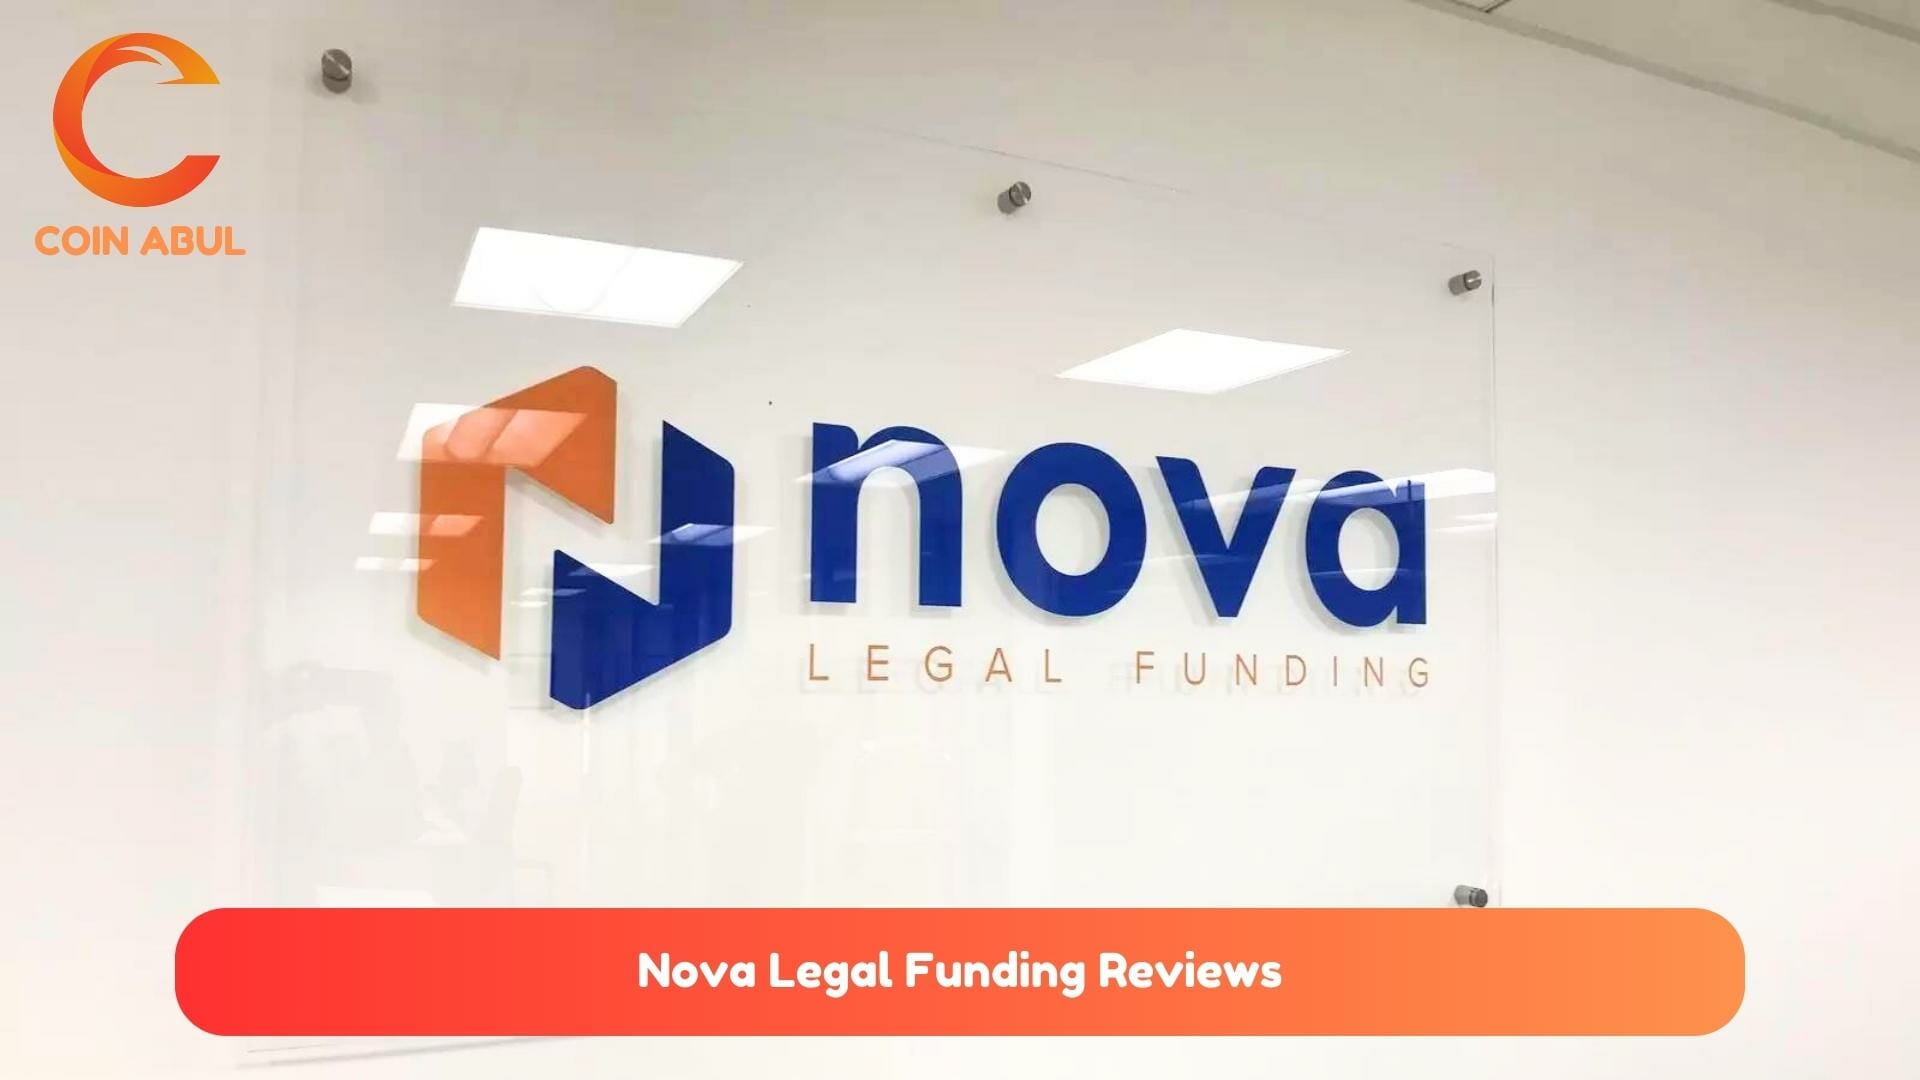 Nova Legal Funding Reviews